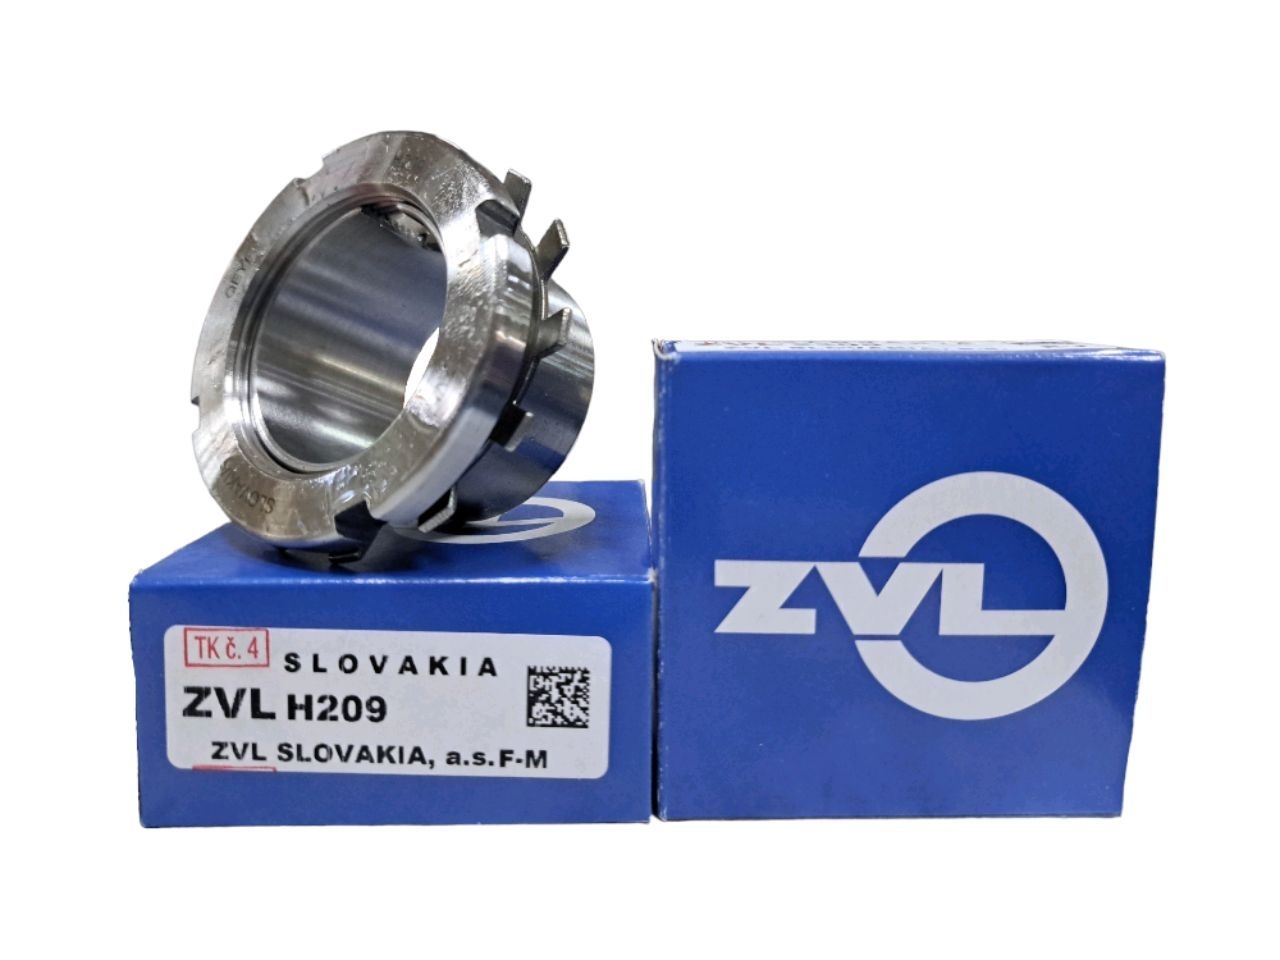 Втулка закрепительная H209 ZVL (Словакия)